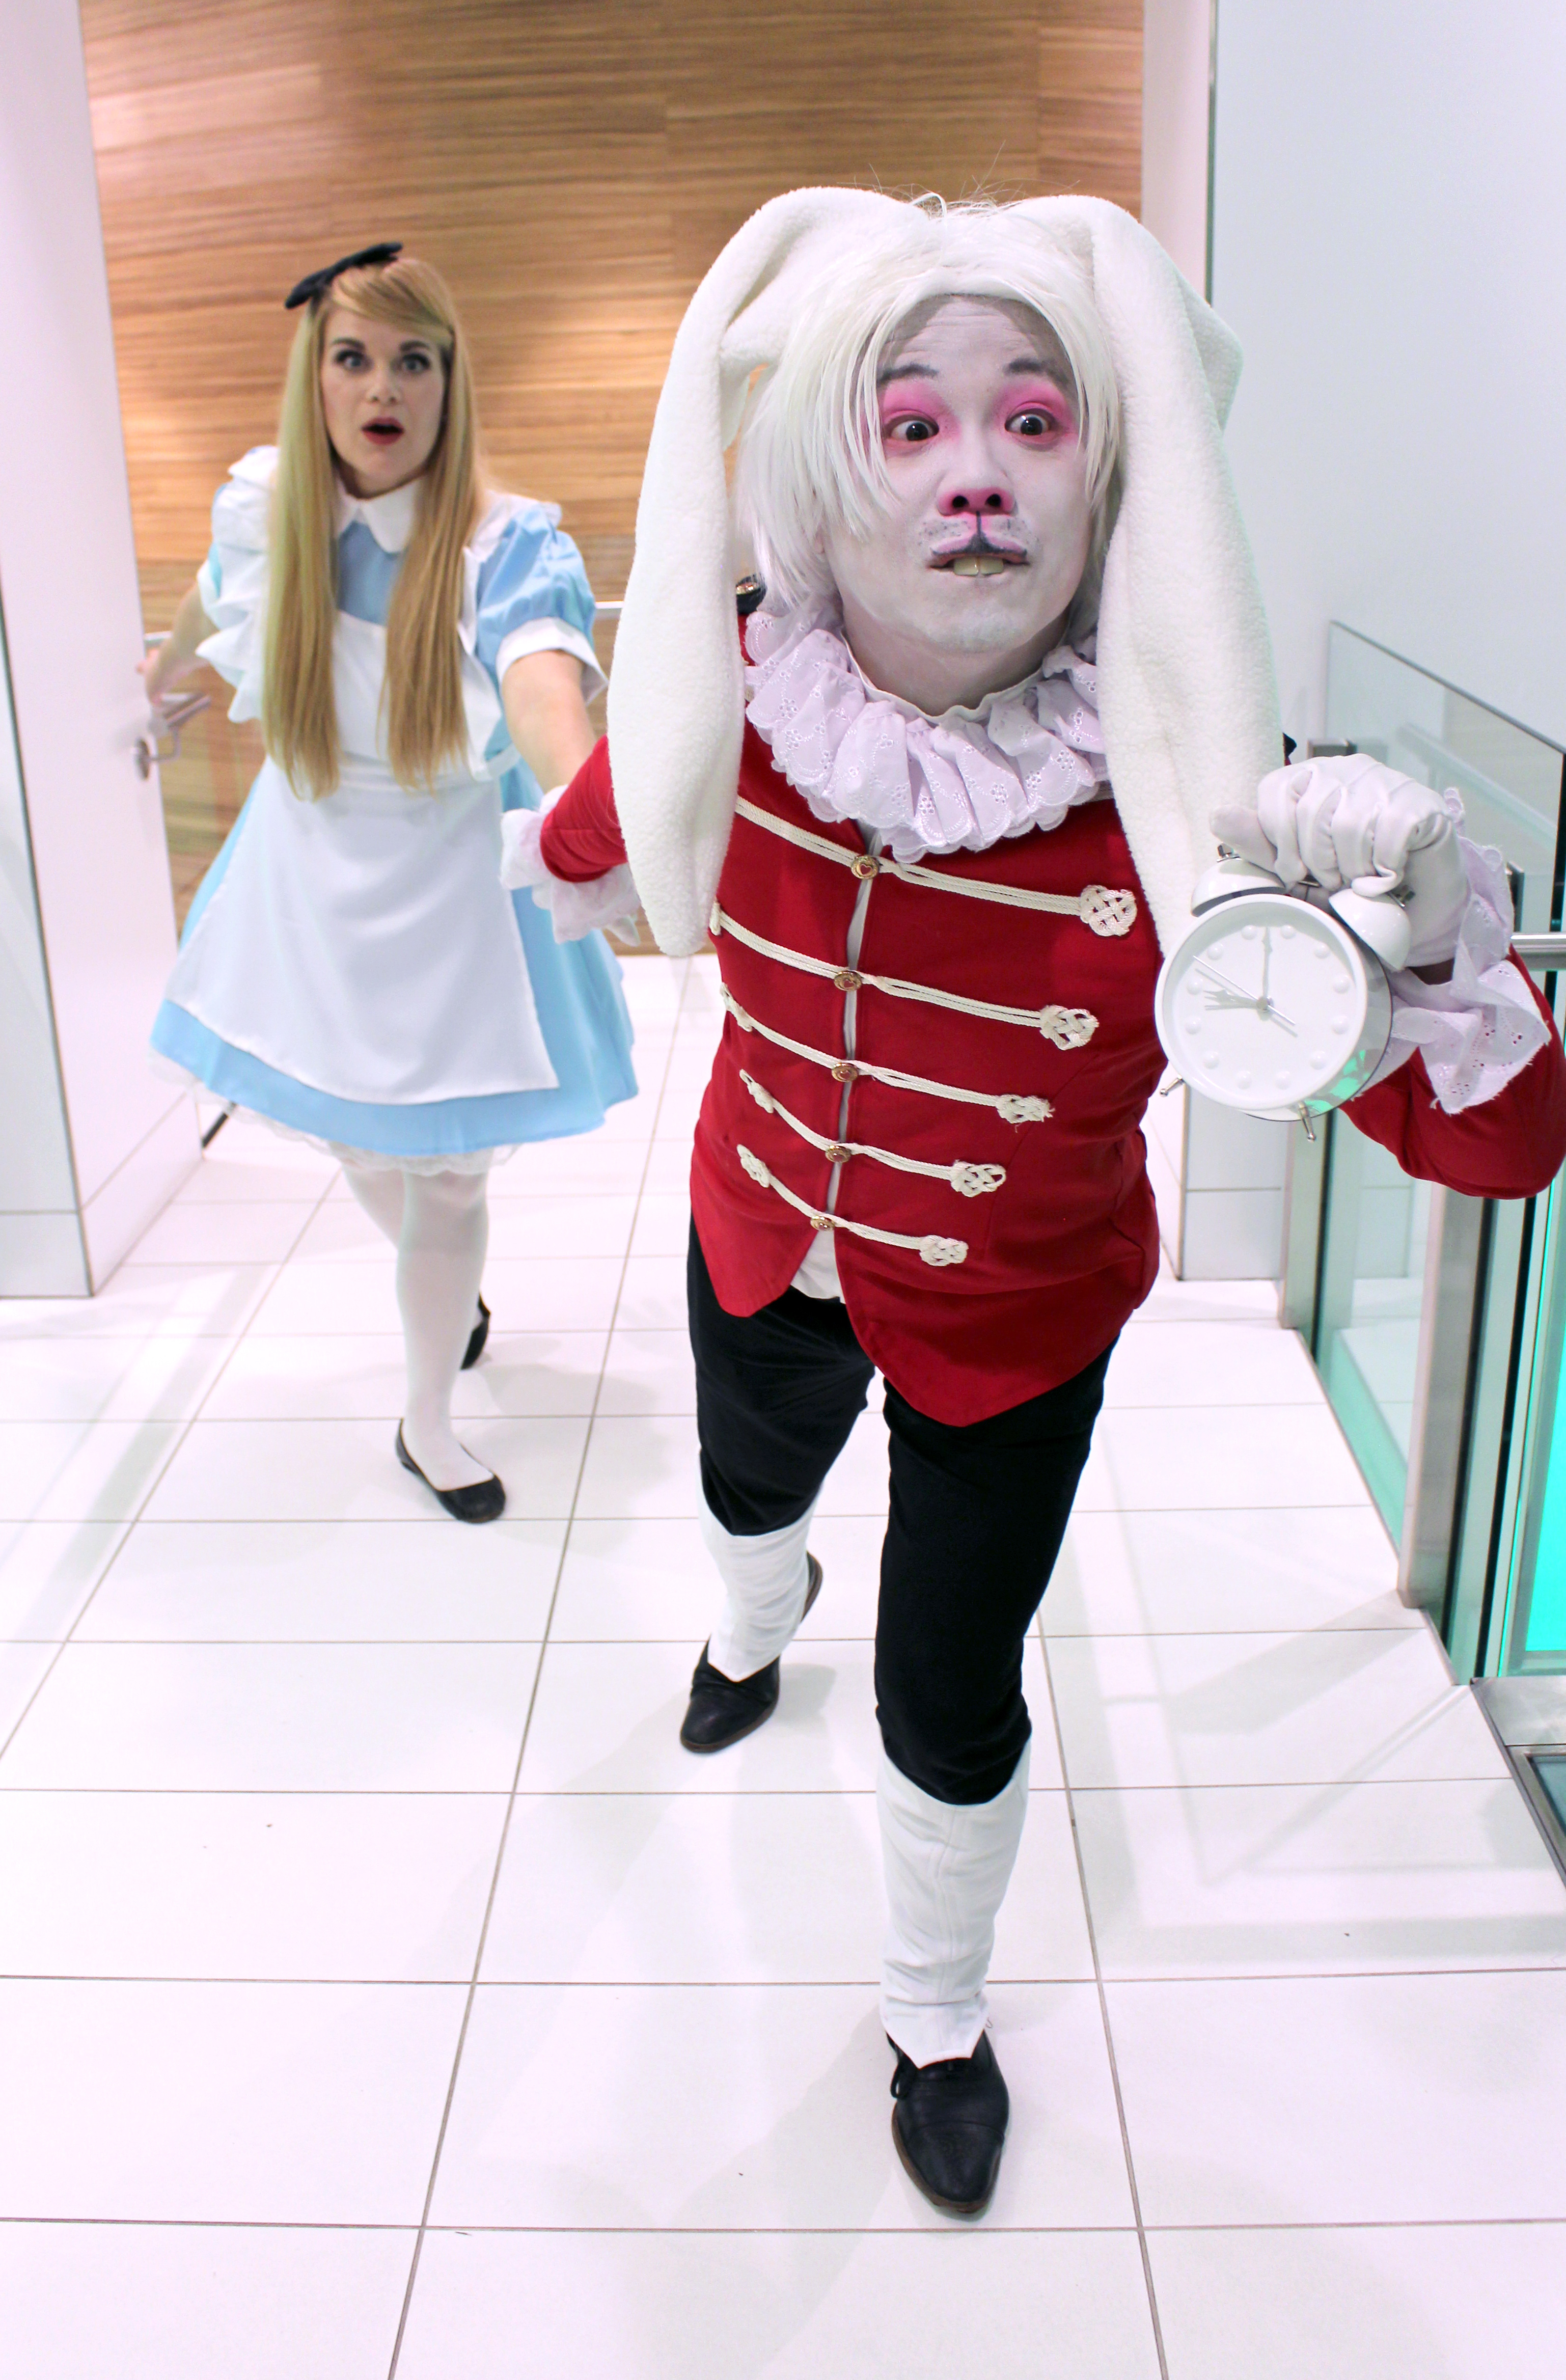 Alice in Wonderland inspired make-up  Alice in wonderland makeup, Wonderland  makeup, Alice halloween